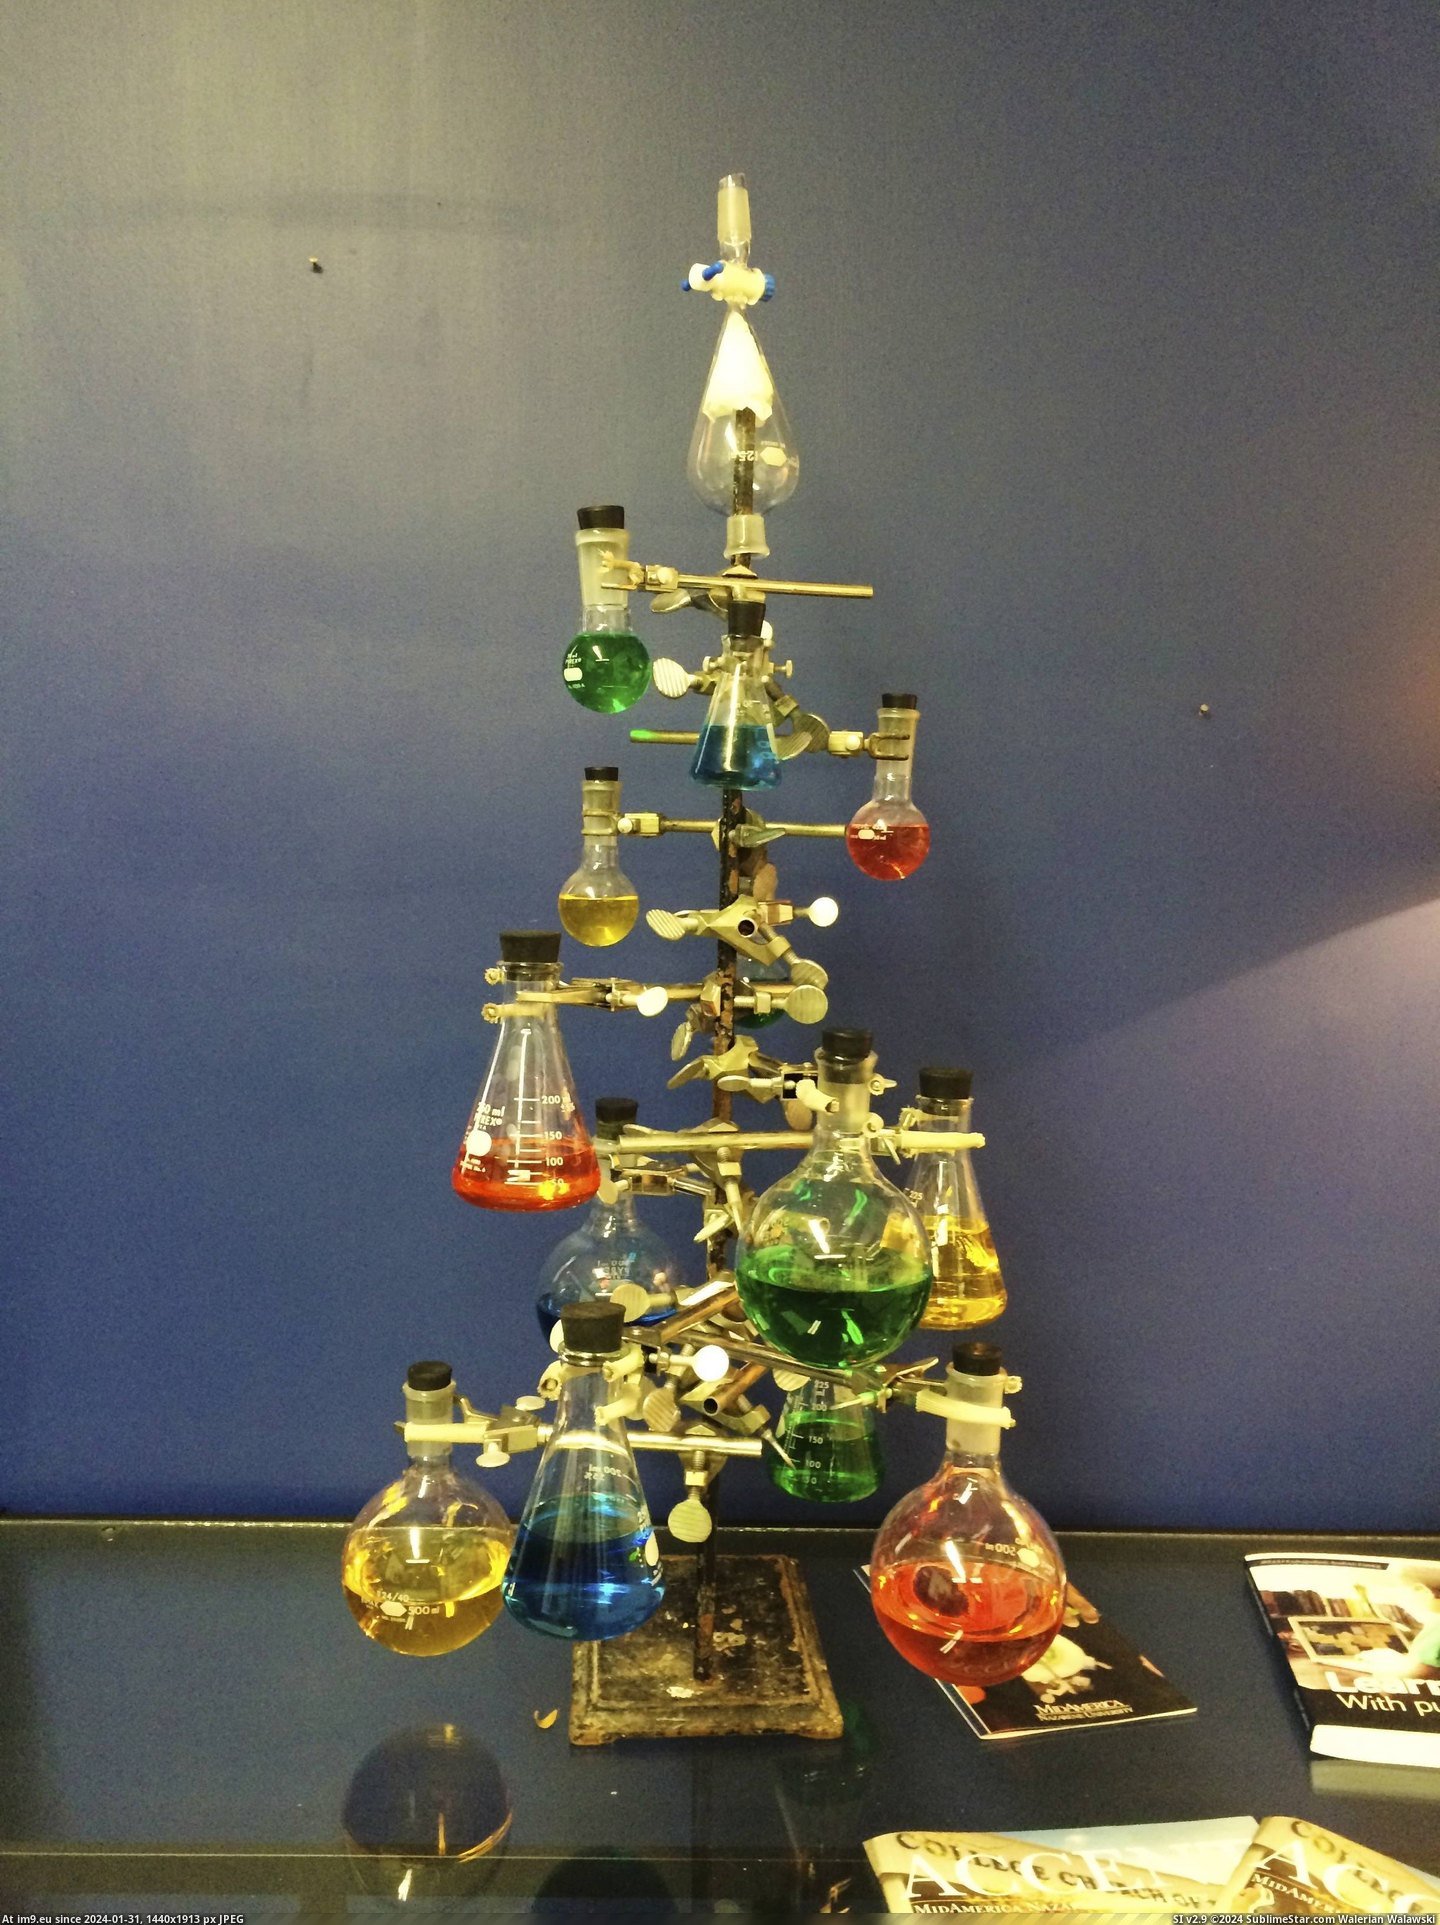 #For #Tree #Lab #Christmas [Pics] Christmas tree I made for my lab Pic. (Bild von album My r/PICS favs))